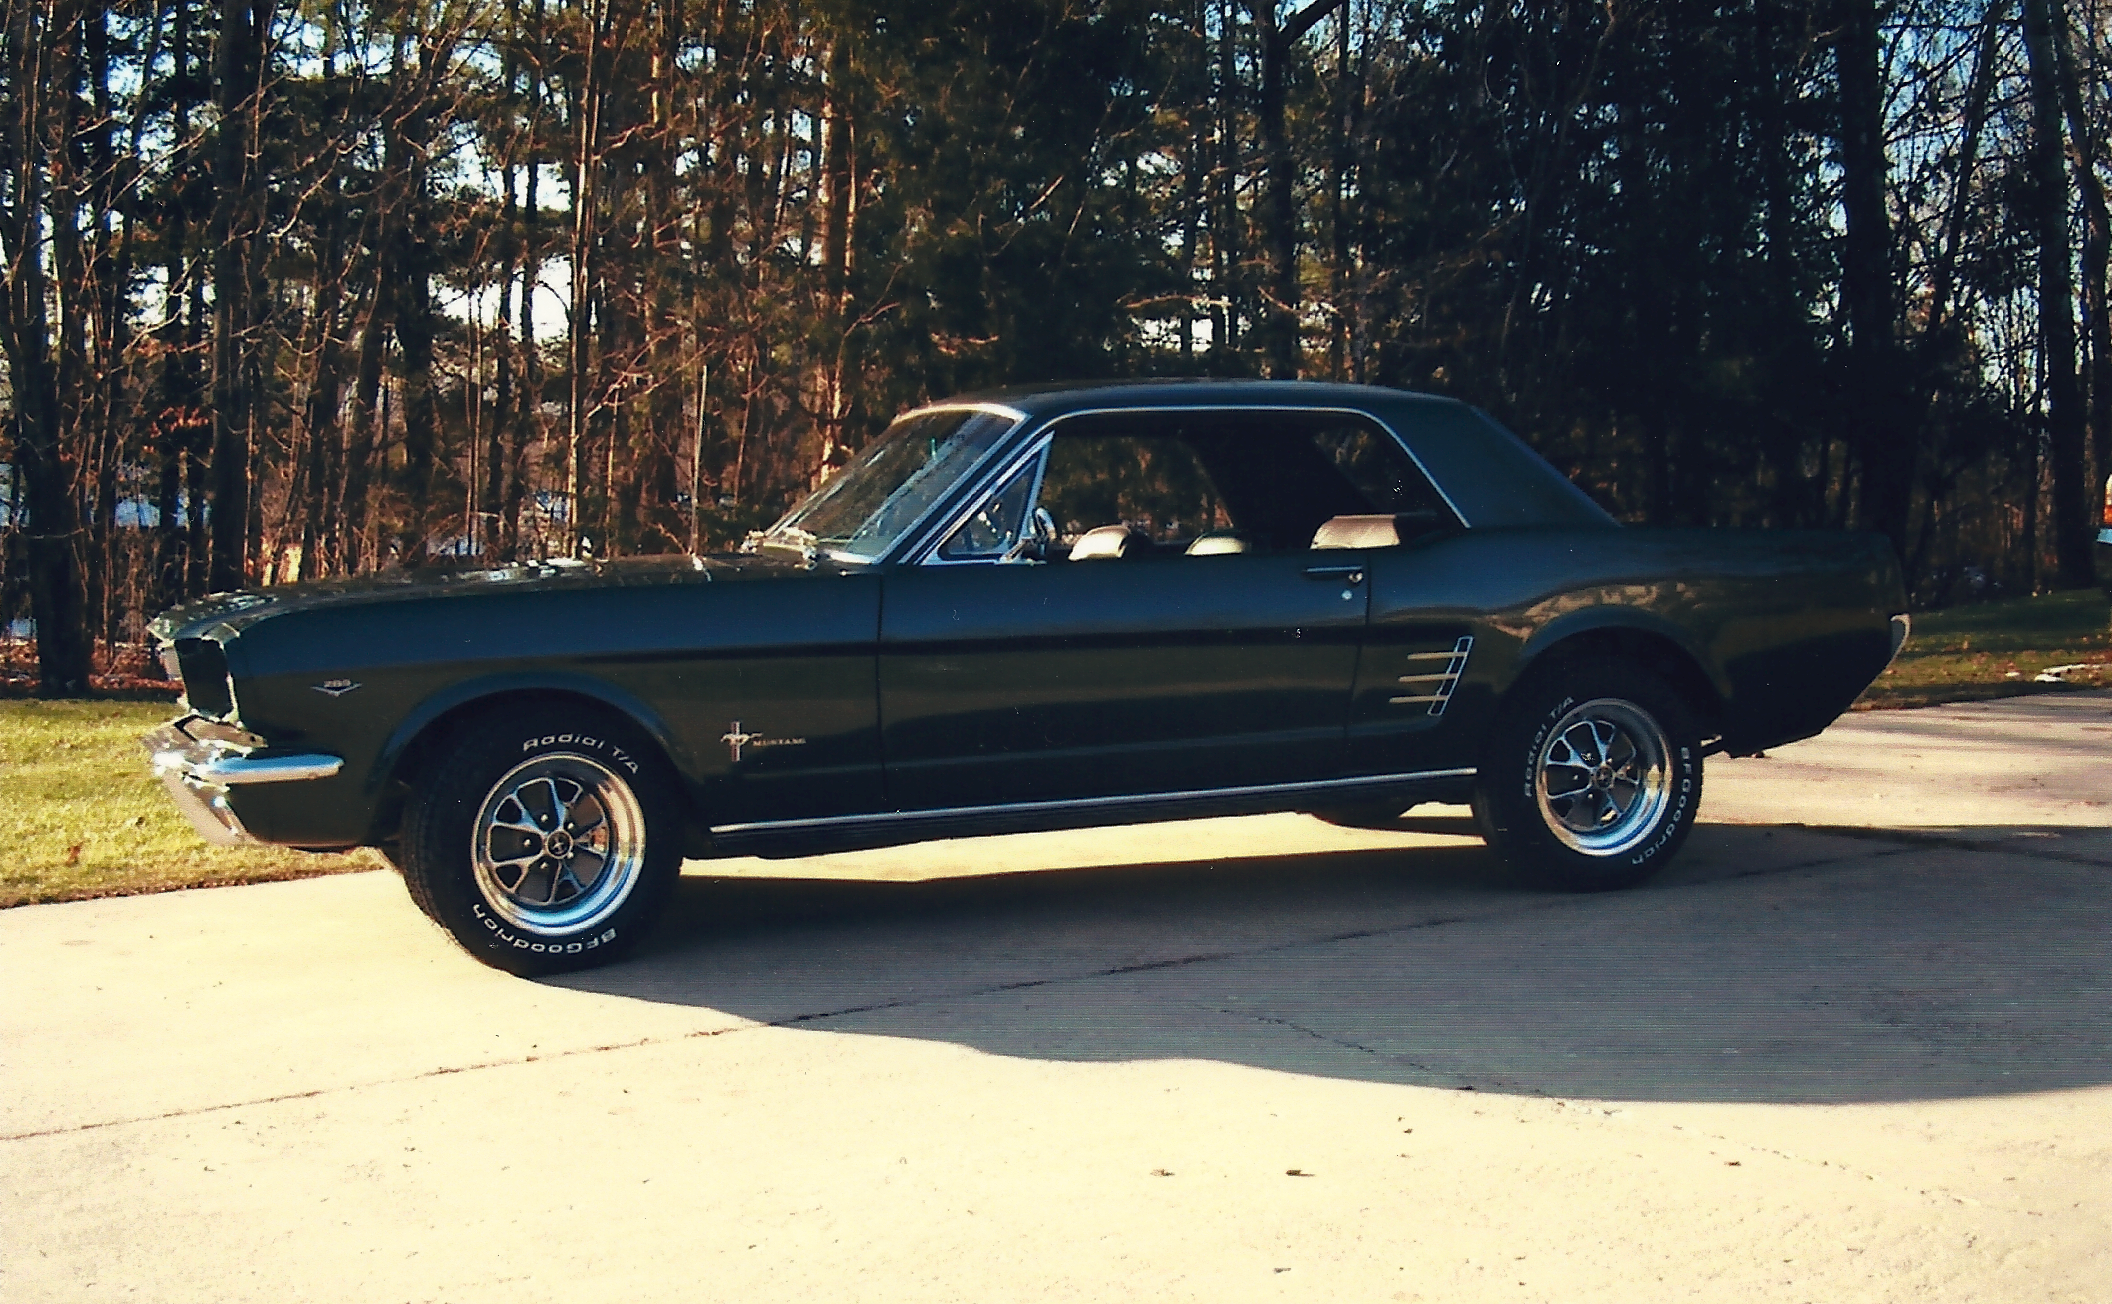  '66 Ford Mustang&nbsp;  &nbsp; 